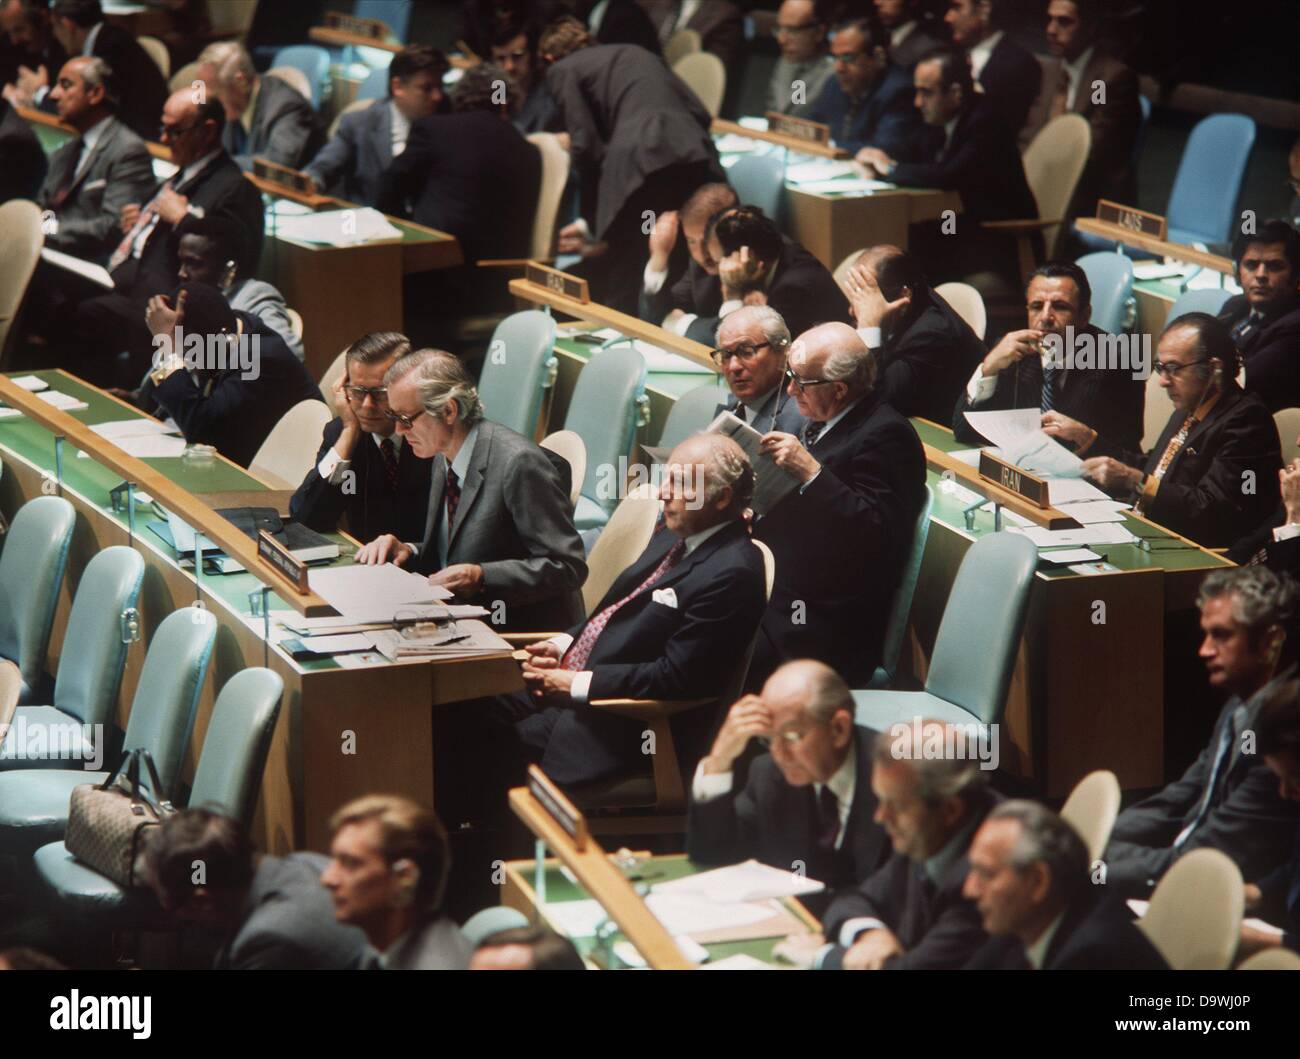 Les deux délégations allemandes sur leurs sièges à l'assemblée plénière de l'édifice de l'ONU à New York. Dans l'avant la délégation de la RDA avec le ministre des affaires étrangères, Otto Winzer, derrière l'allée la RFA délégation avec le ministre des affaires étrangères, Walter Scheel. Photographié le 18 septembre en 1973. Banque D'Images